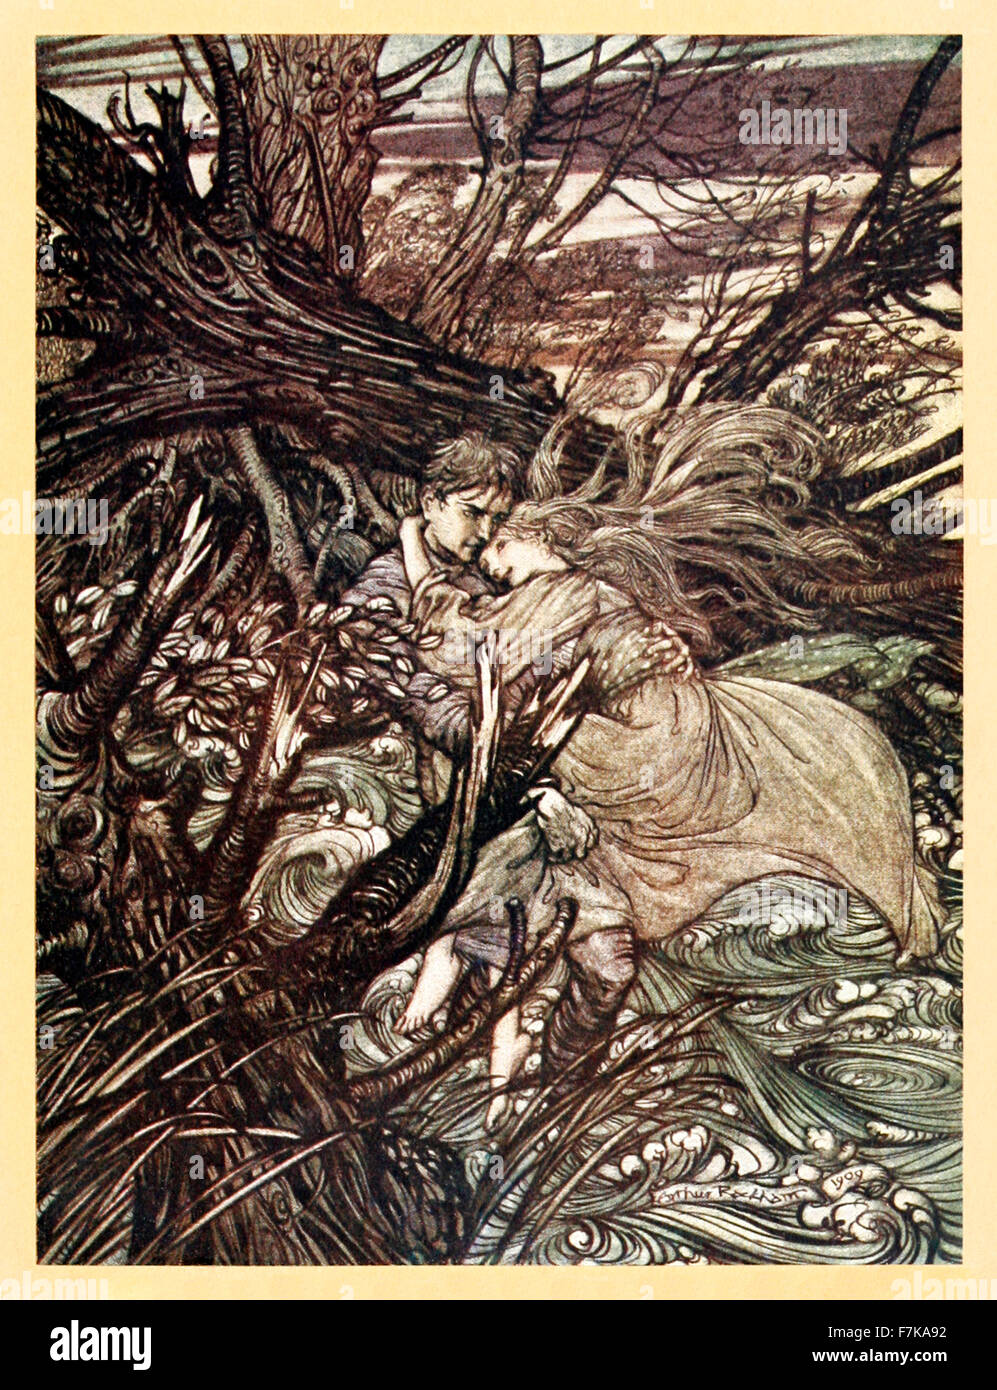 Der Ritter nahm das schöne Mädchen in seinen Armen... "von"Undine", illustriert von Arthur Rackham (1867-1939). Siehe Beschreibung für mehr Informationen. Stockfoto